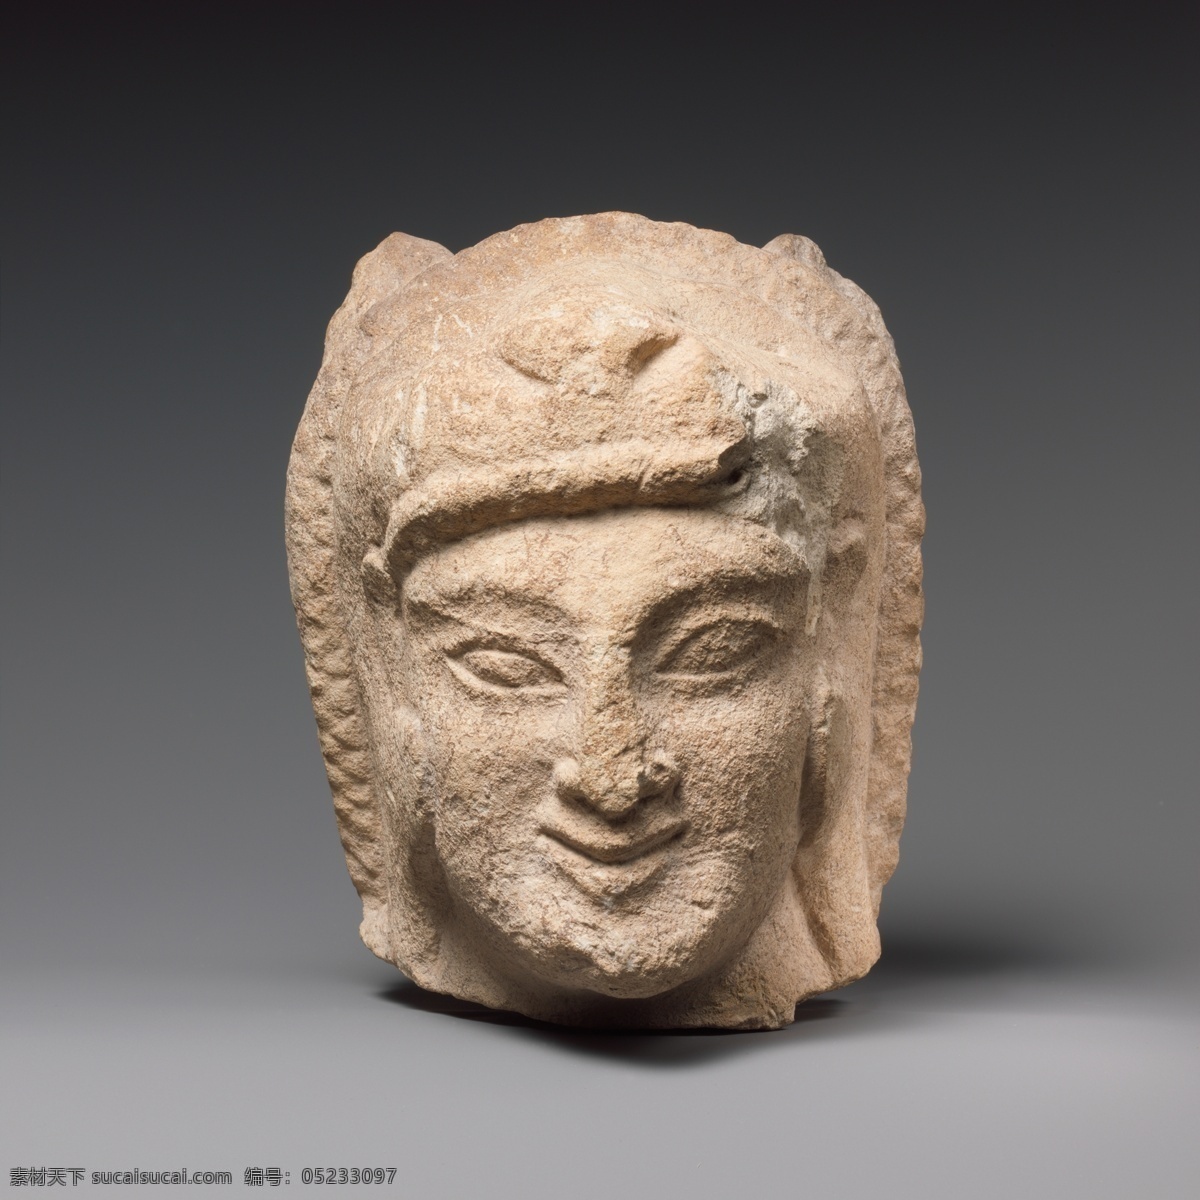 石雕 雕刻 雕塑 头像 埃及 微笑 传统文化 文化艺术